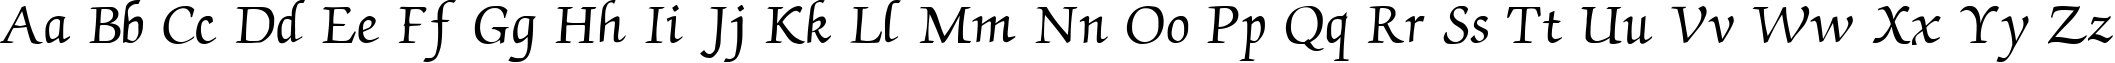 Пример написания английского алфавита шрифтом CyrillicChancellor